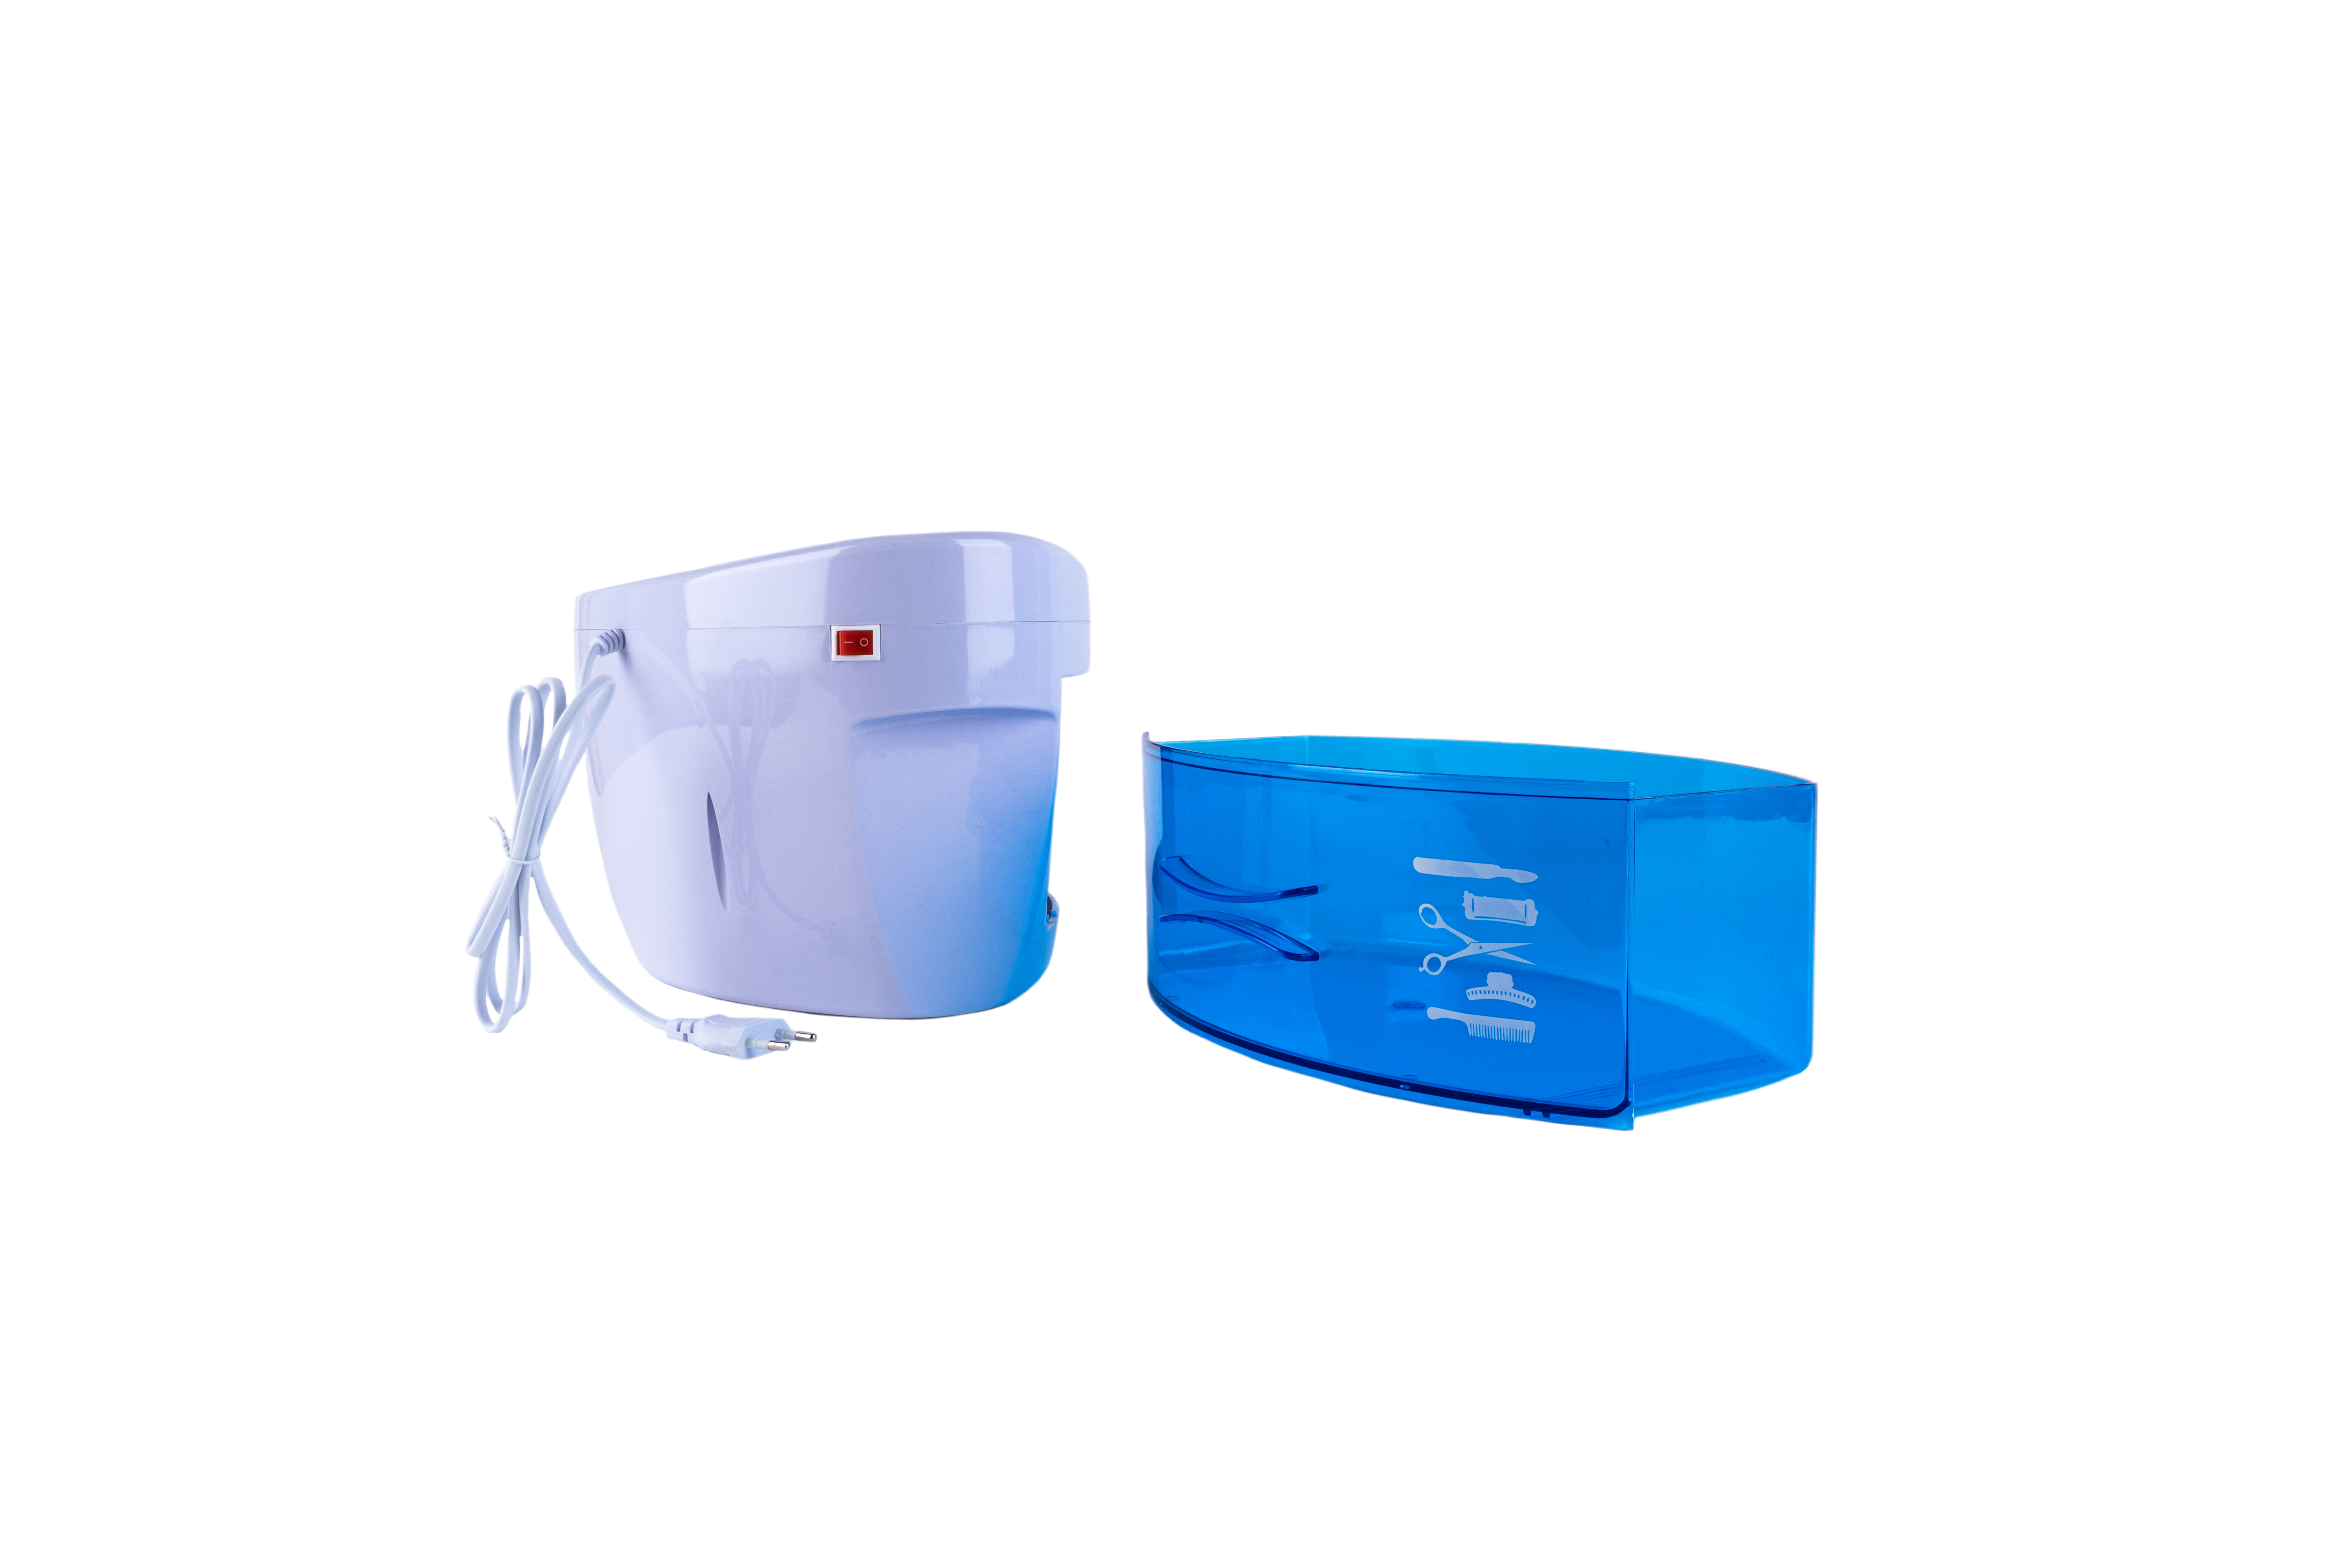 Sileu Clean Plus - Esterilizador Eléctrico Recargable USB Compacto para Copas  Menstruales - Lámpara de Cuarzo UV y Ozono - Home Health Europe